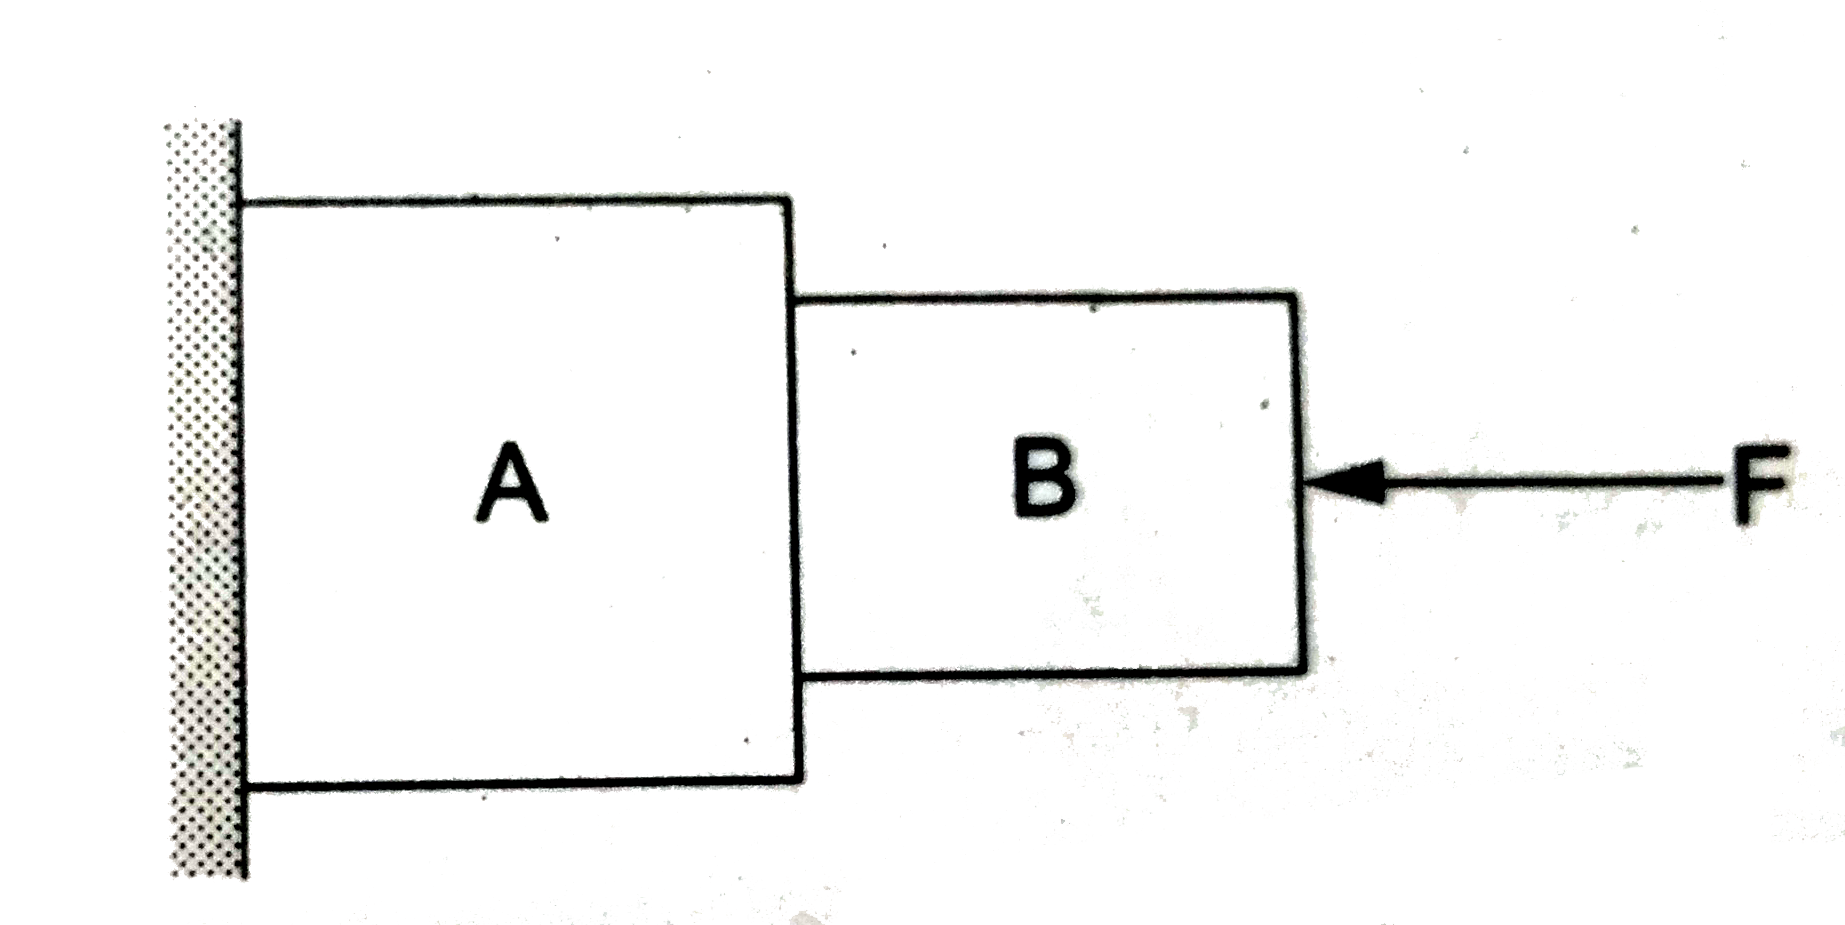 चित्र में प्रदर्शित स्थिति में दीवार चिकनी है, किन्तु A तथा B की सतहों के बीच घर्षण है| सही कथन को चुने|